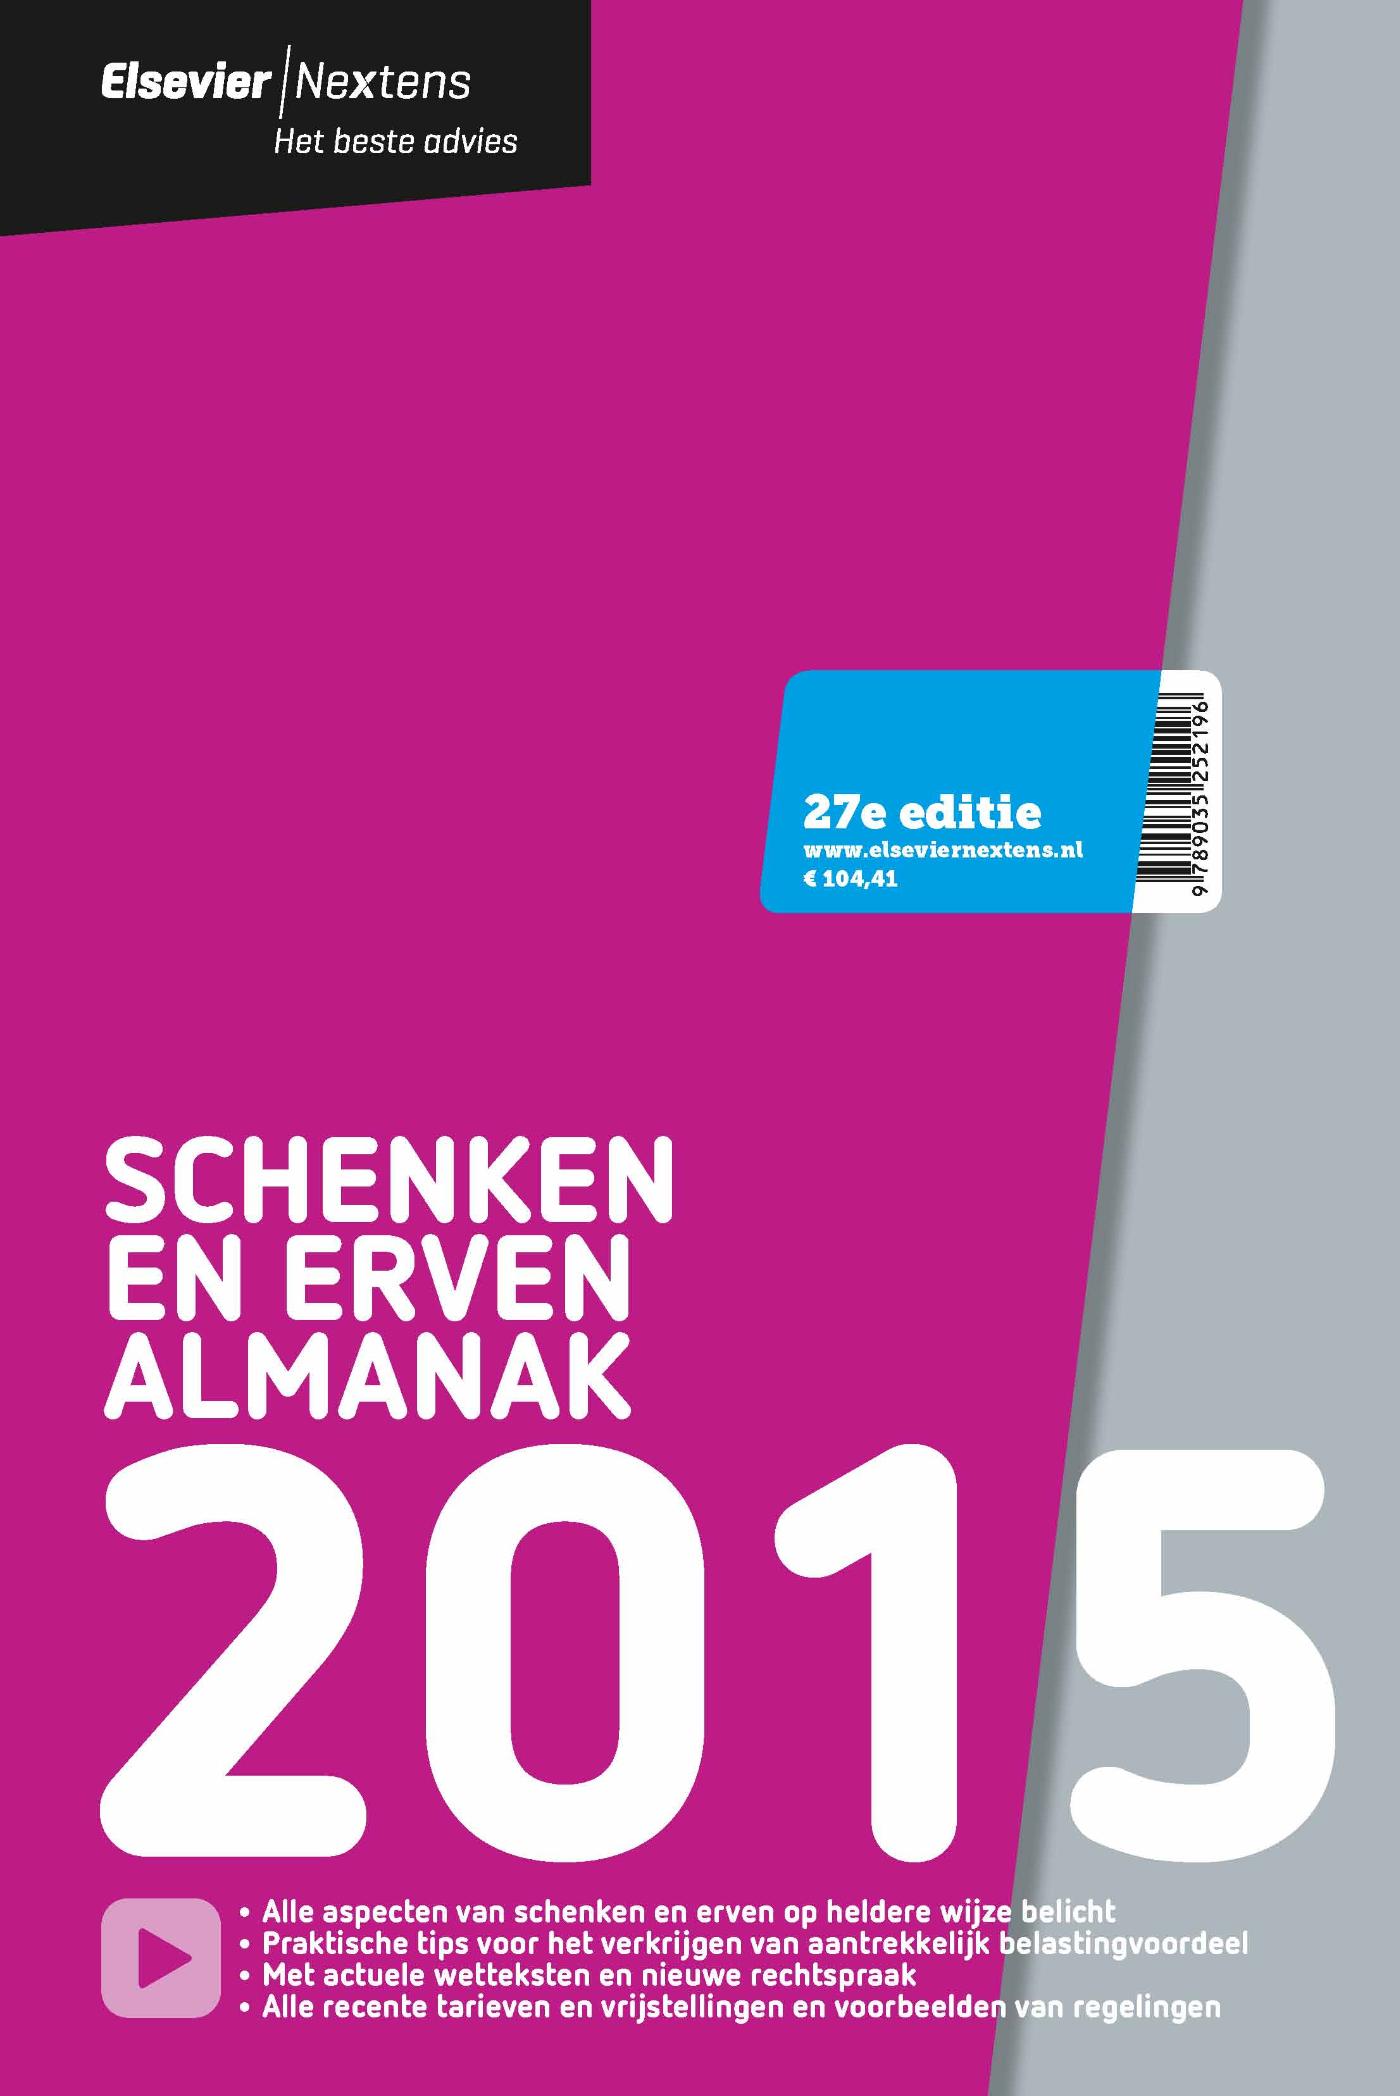 Elsevier schenken en erven almanak / 2015